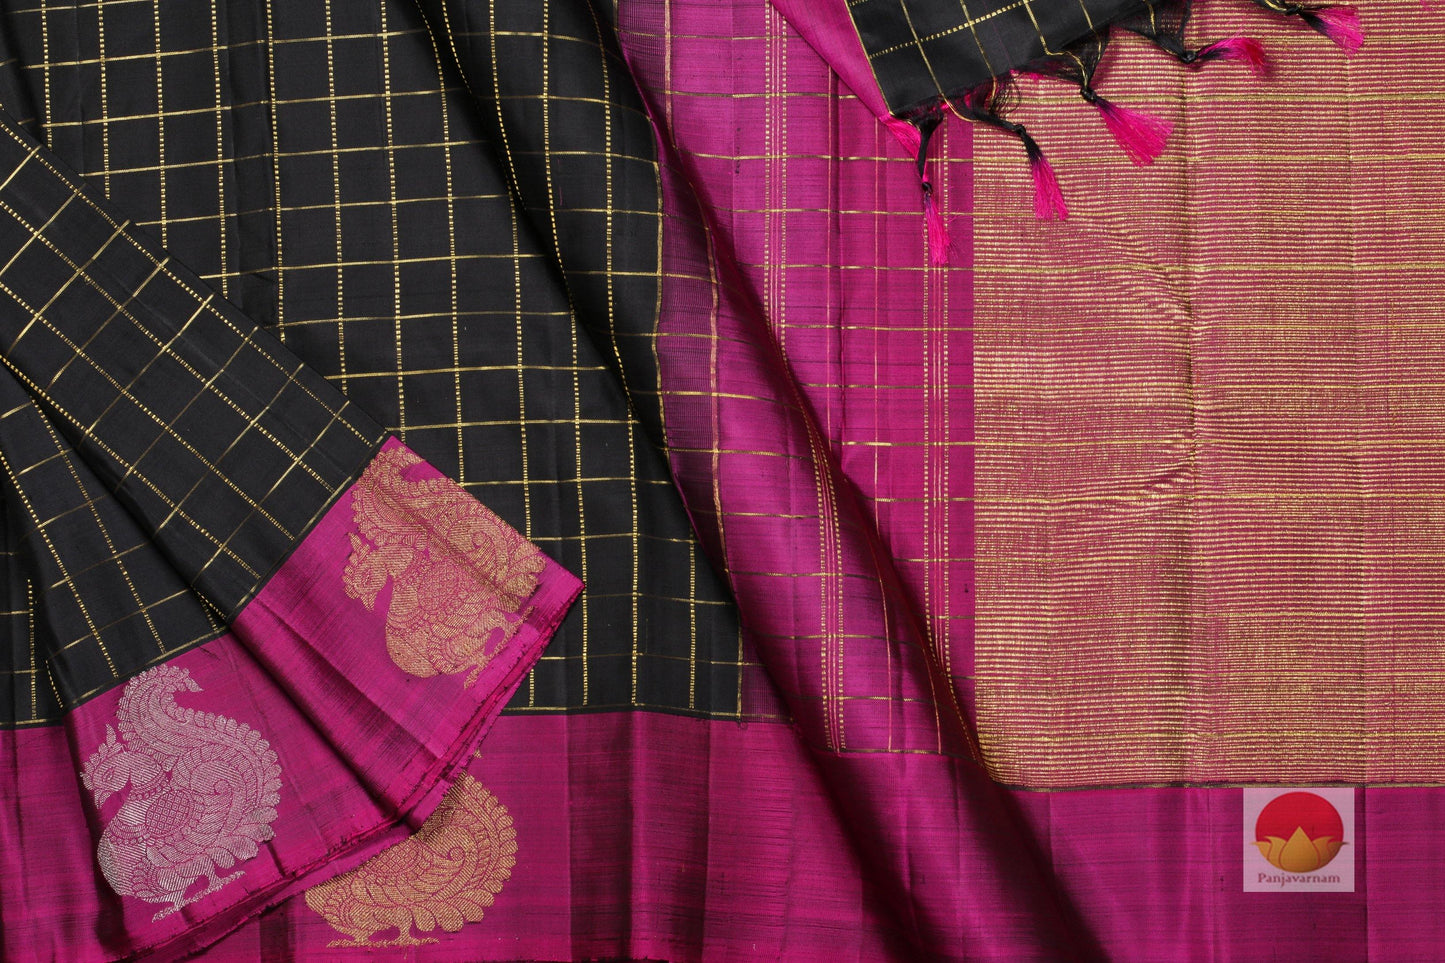 Traditional Design Handwoven Pure Silk Kanjivaram Saree - Pure Zari - PA 190 Archives - Silk Sari - Panjavarnam